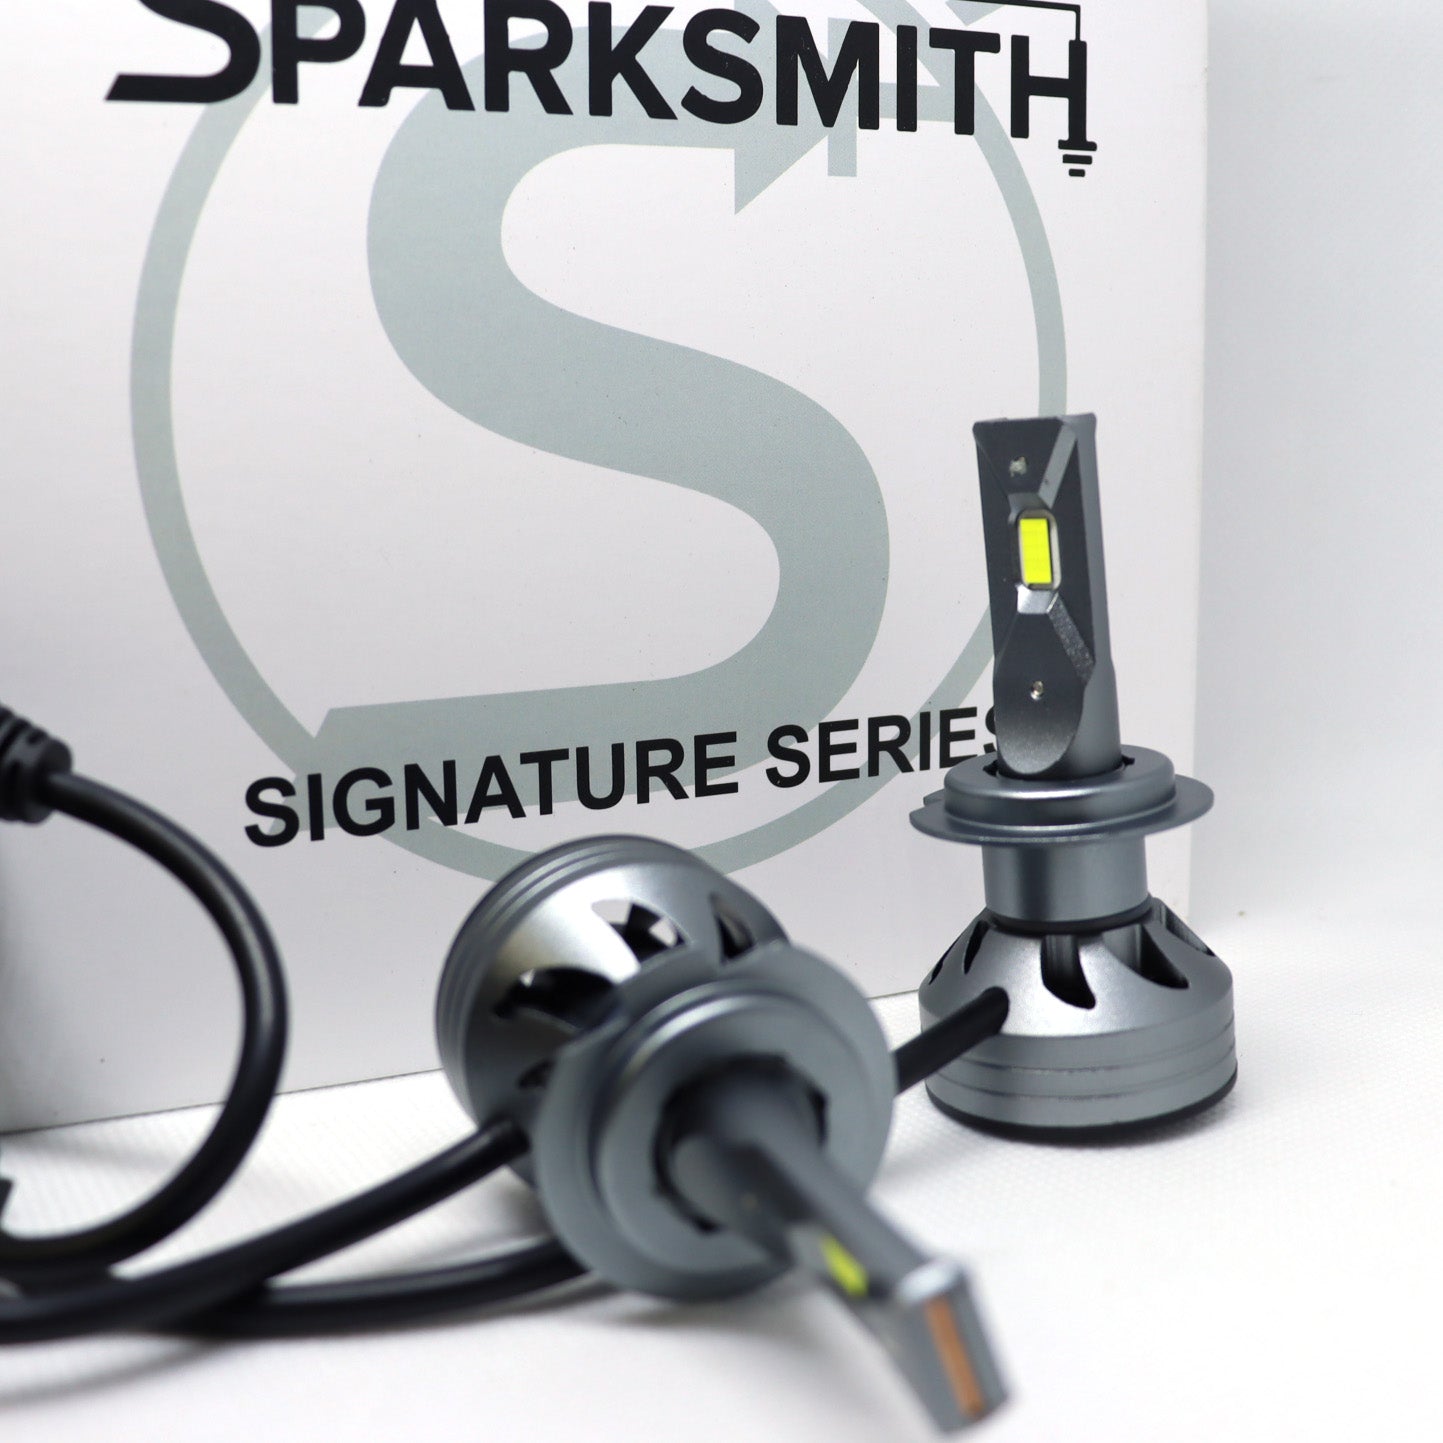 Sparksmith S9 LED Bulbs